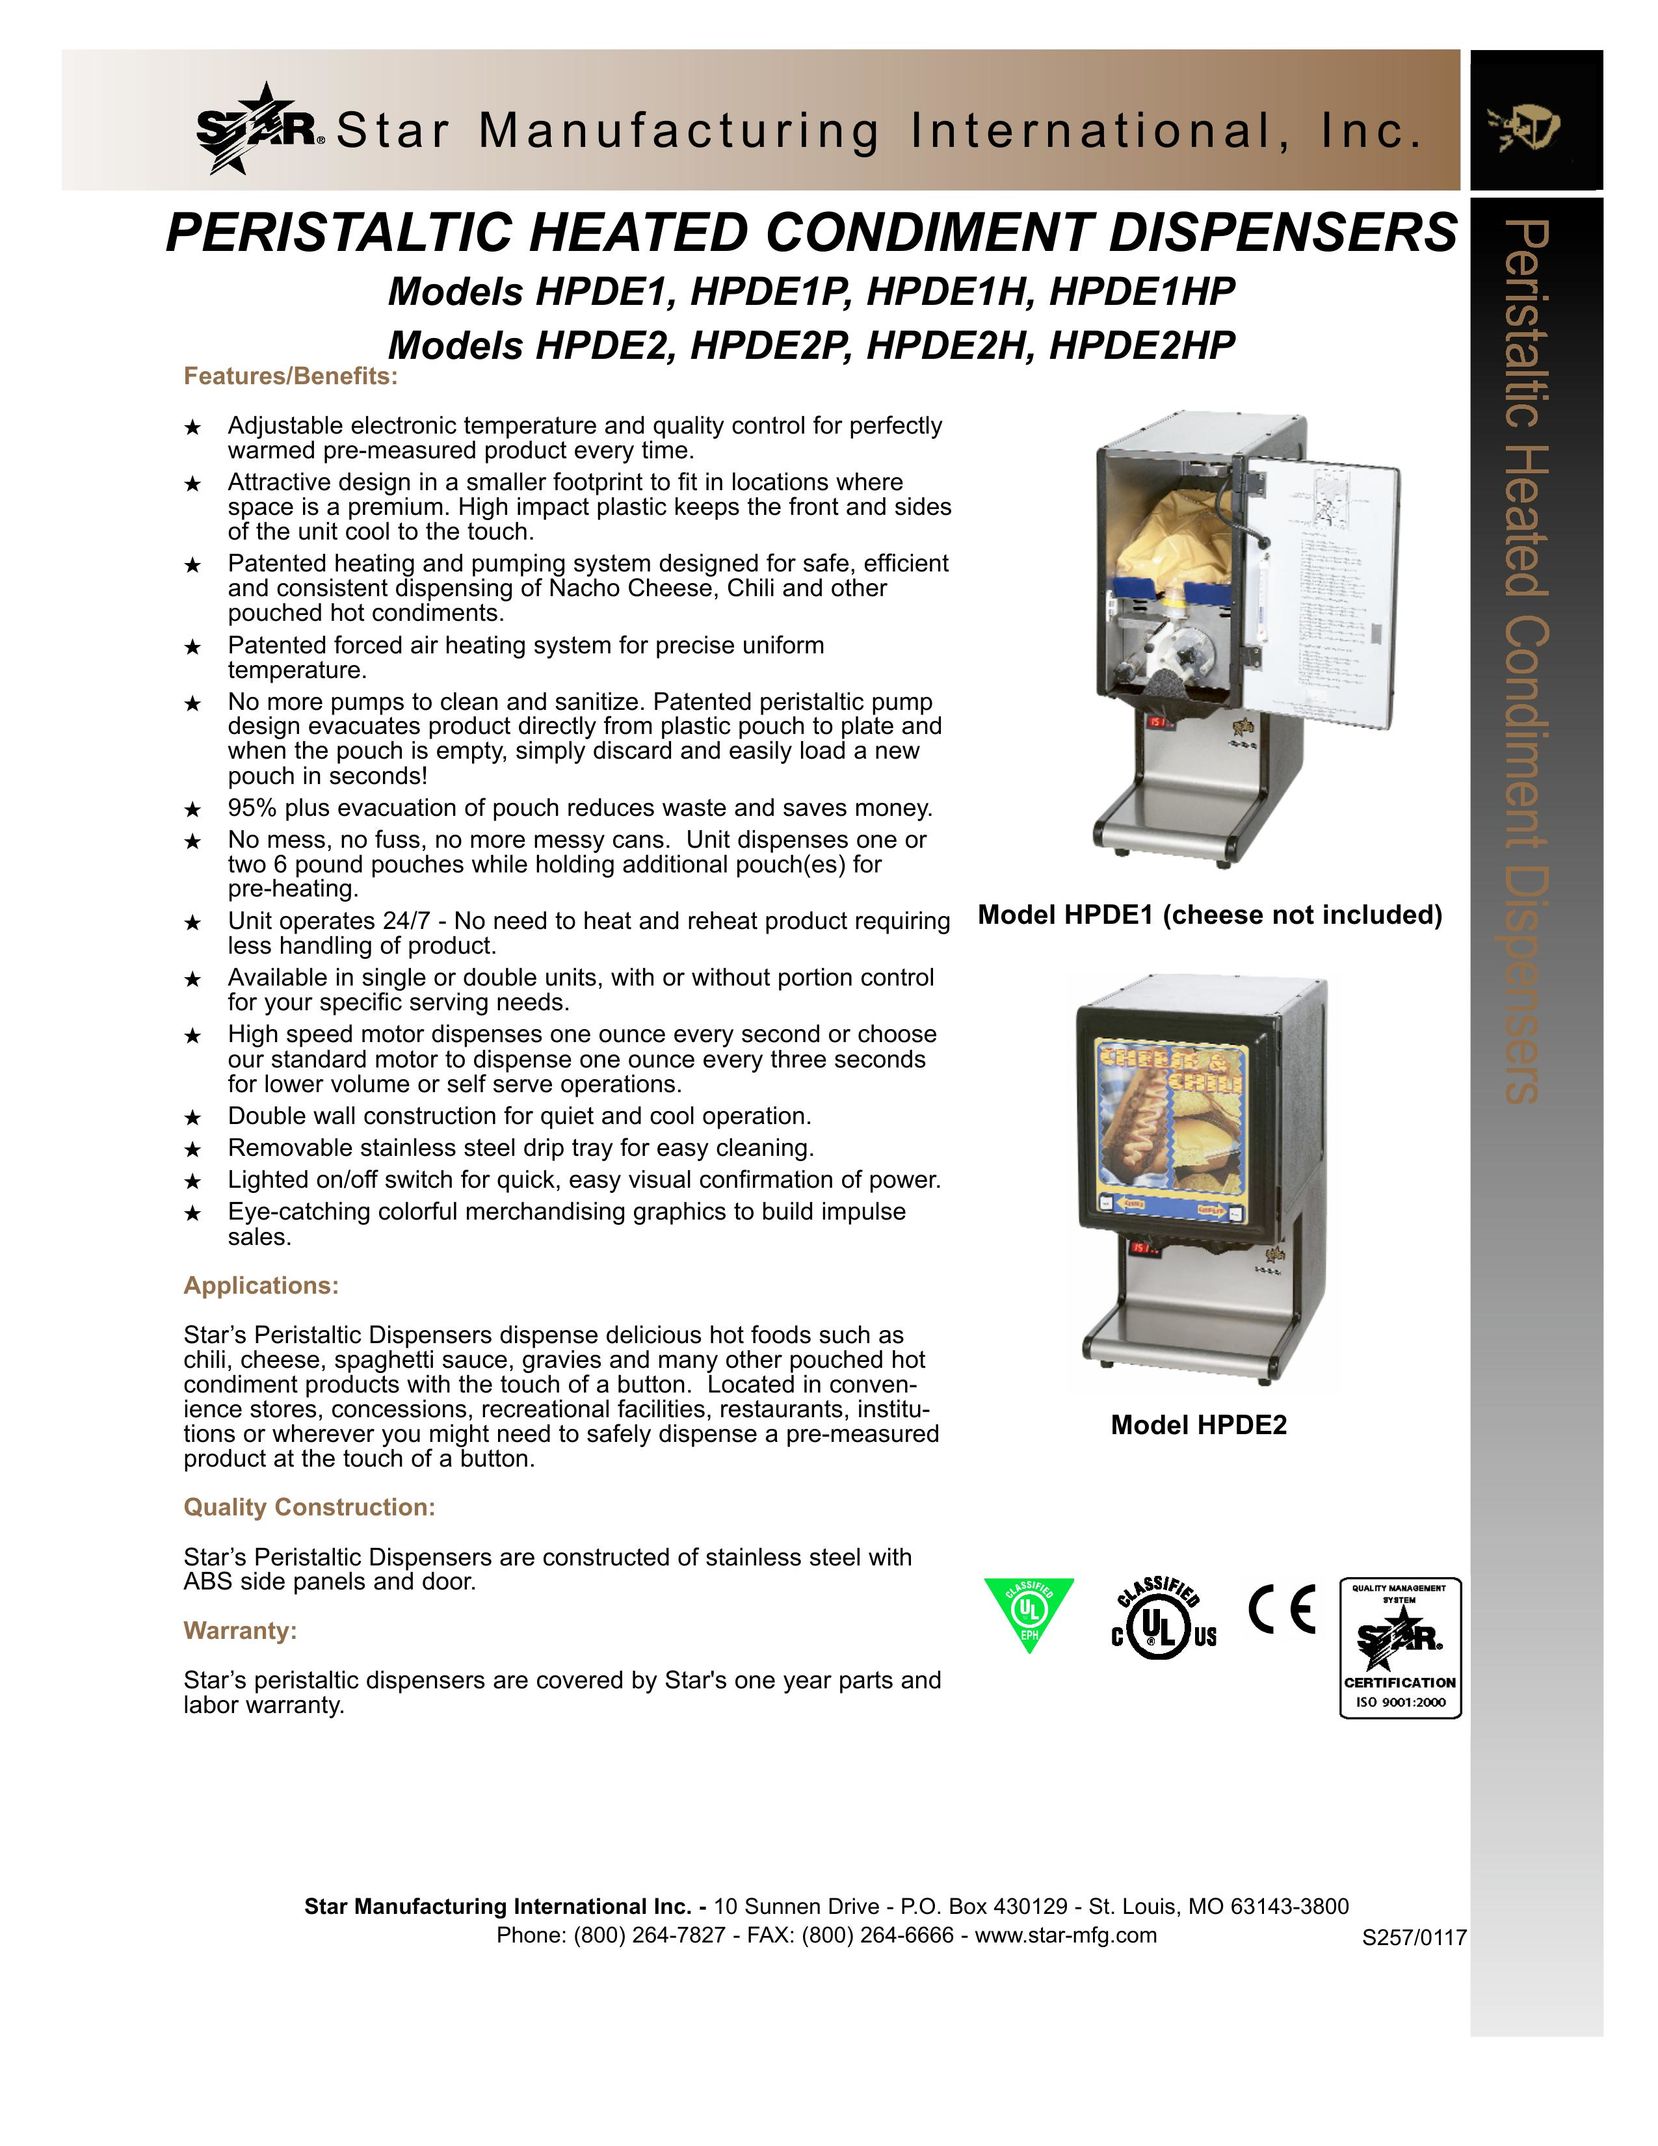 Star Manufacturing HPDE2 Beverage Dispenser User Manual